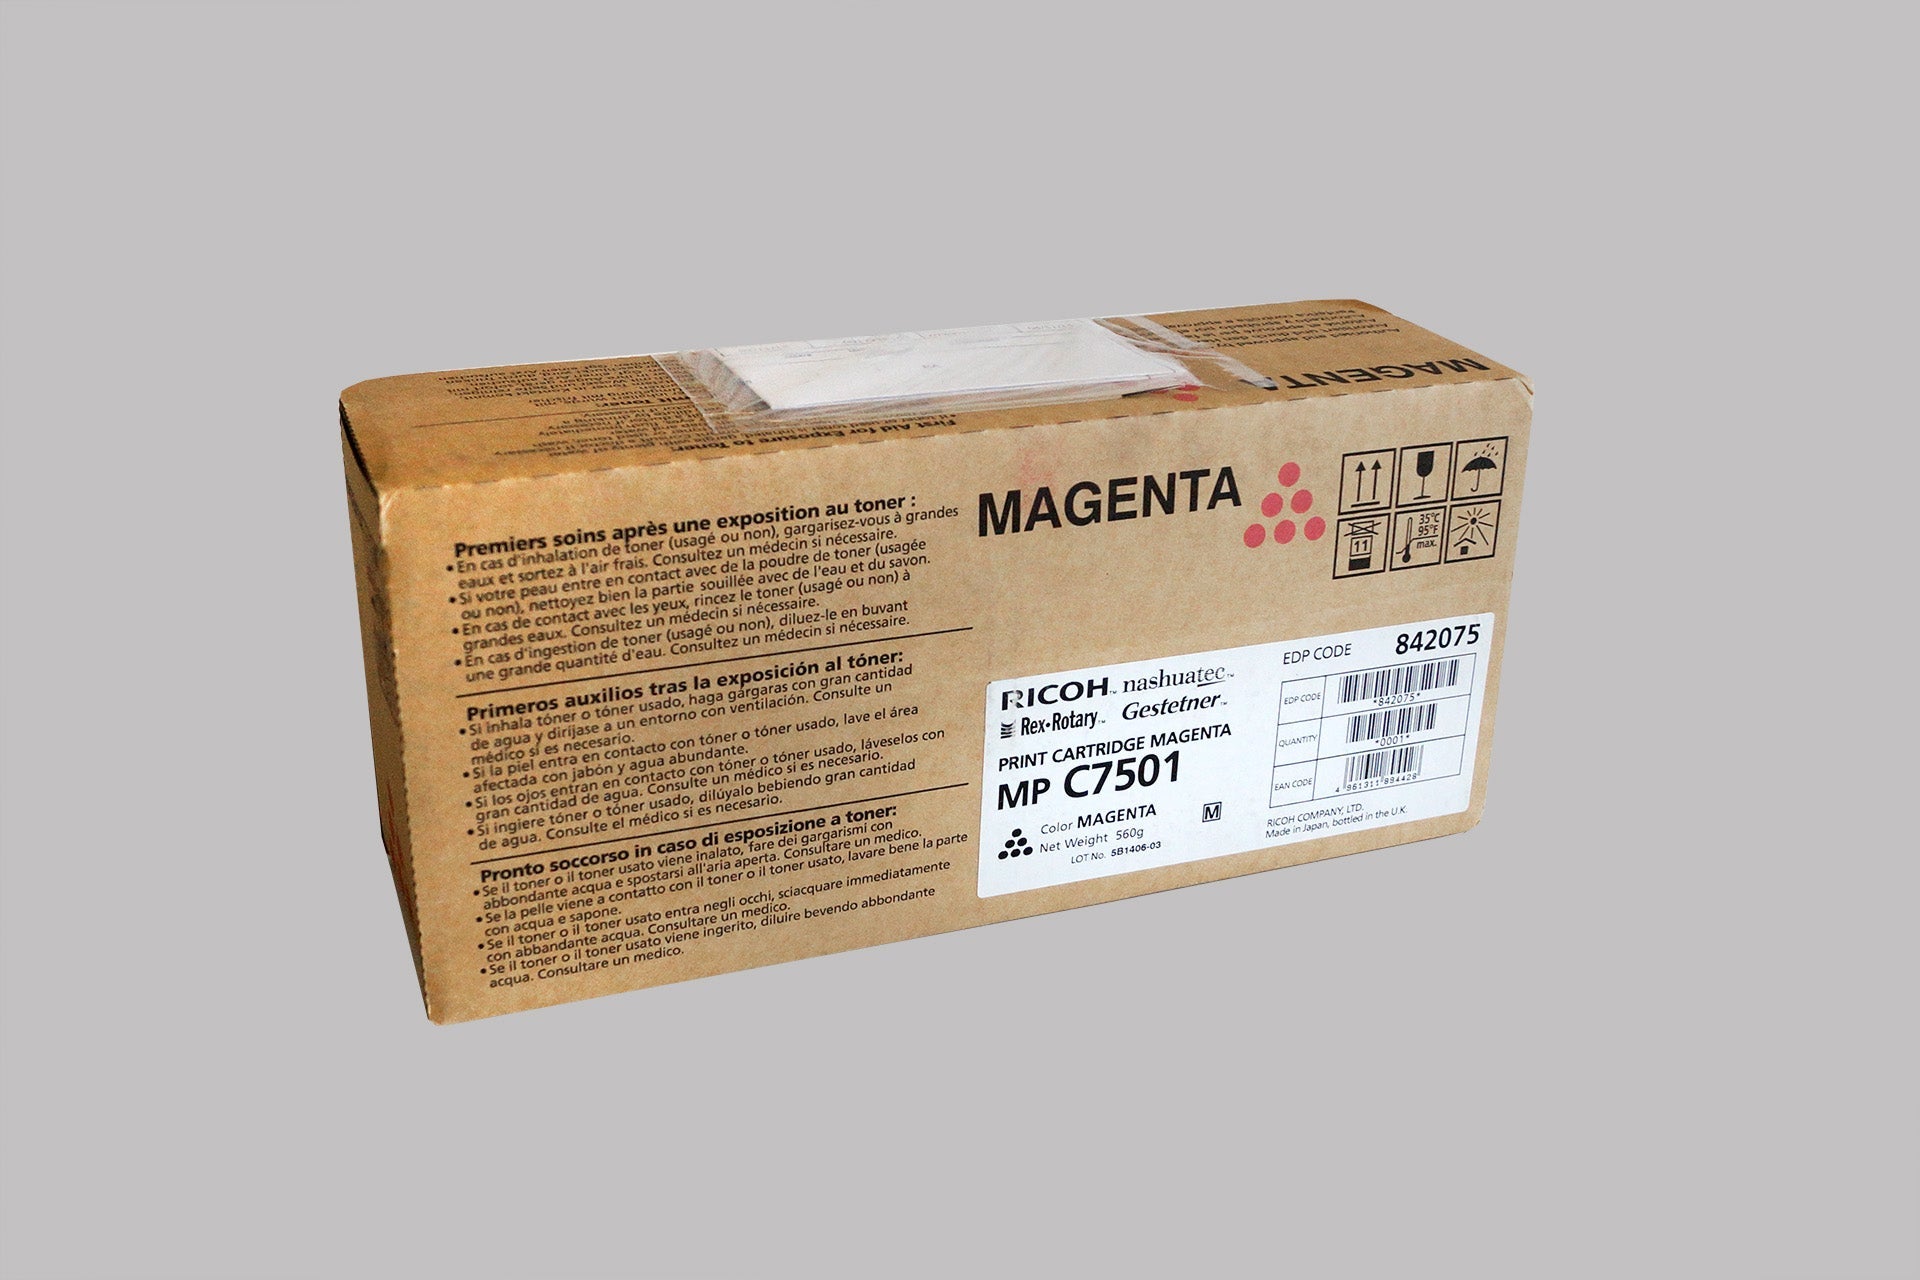 Print Cartridge 842075 Magenta